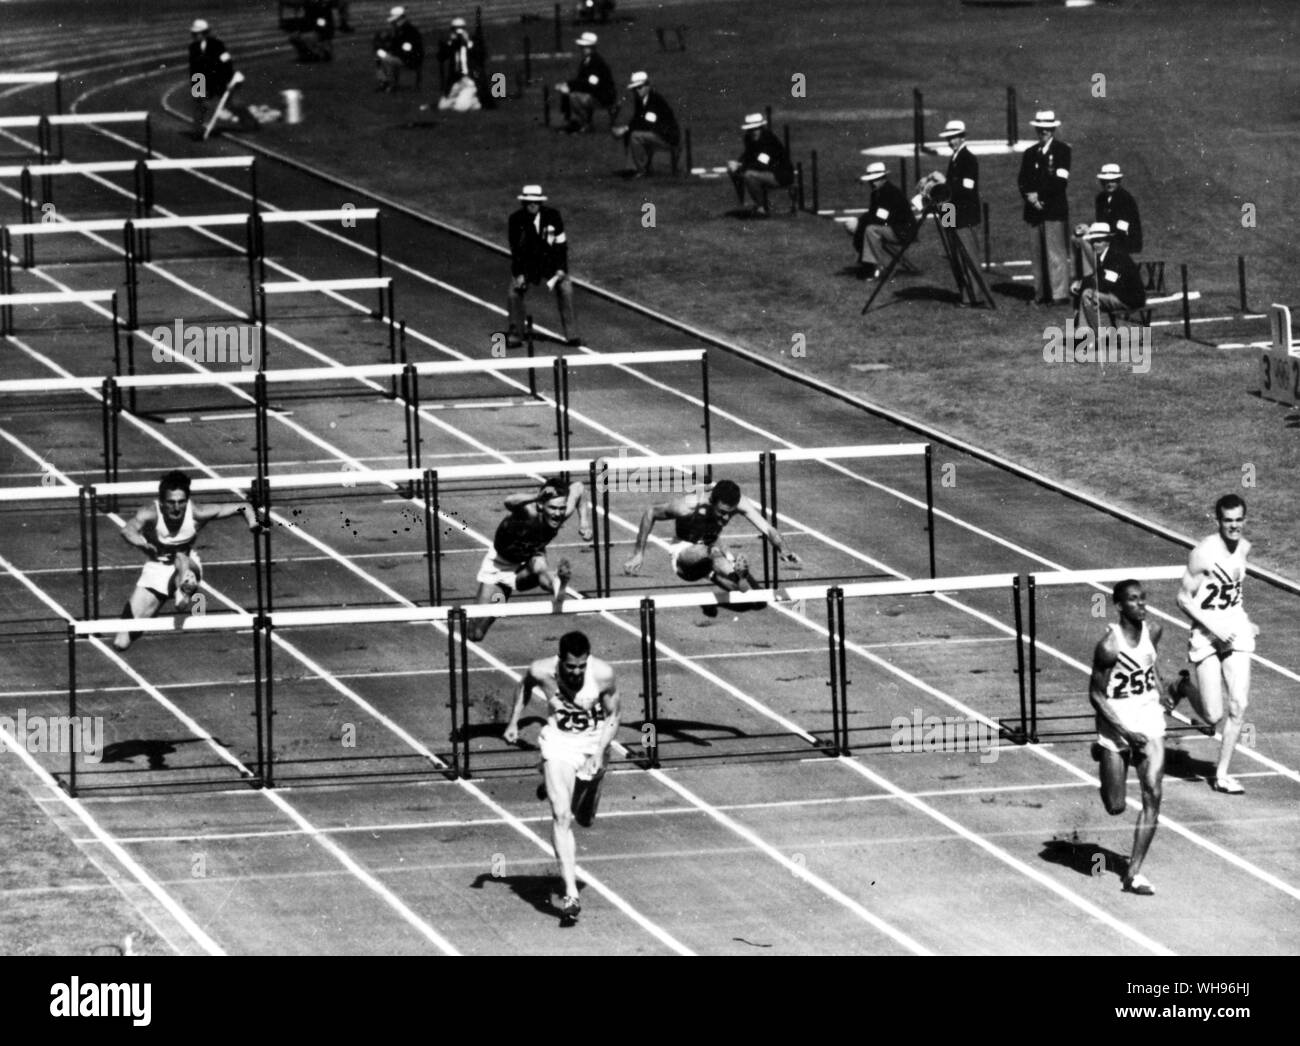 Aus., Melbourne, Olimpiadi, 1956: 1-2-3 PER STATI UNITI D'AMERICA! Il campo assume l'ultimo ostacolo della Olympic 110 metri ostacoli, vinto da Lee Calhoun DI STATI UNITI D'AMERICA () nel nuovo tempo record di 13,5 secondi. La seconda è stata Jack Davis () e il terzo è stato Joel Shankle ().. Foto Stock